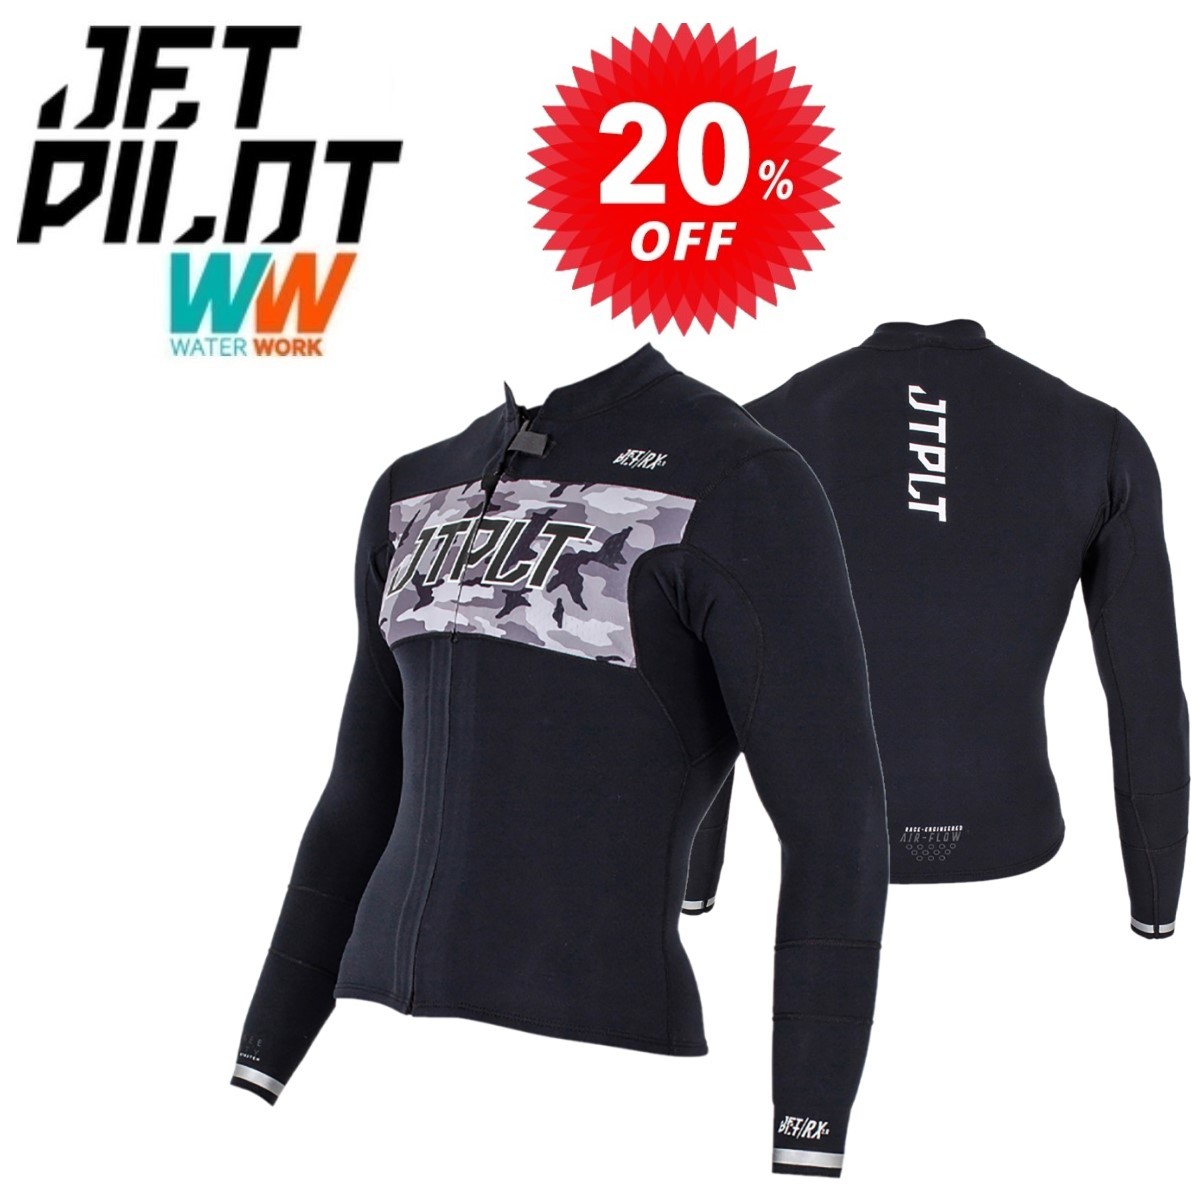 ジェットパイロット JETPILOT タッパー セール 30%オフ 送料無料 RX 2.0 レース ジャケット ブラック/カモ L JA21156-C